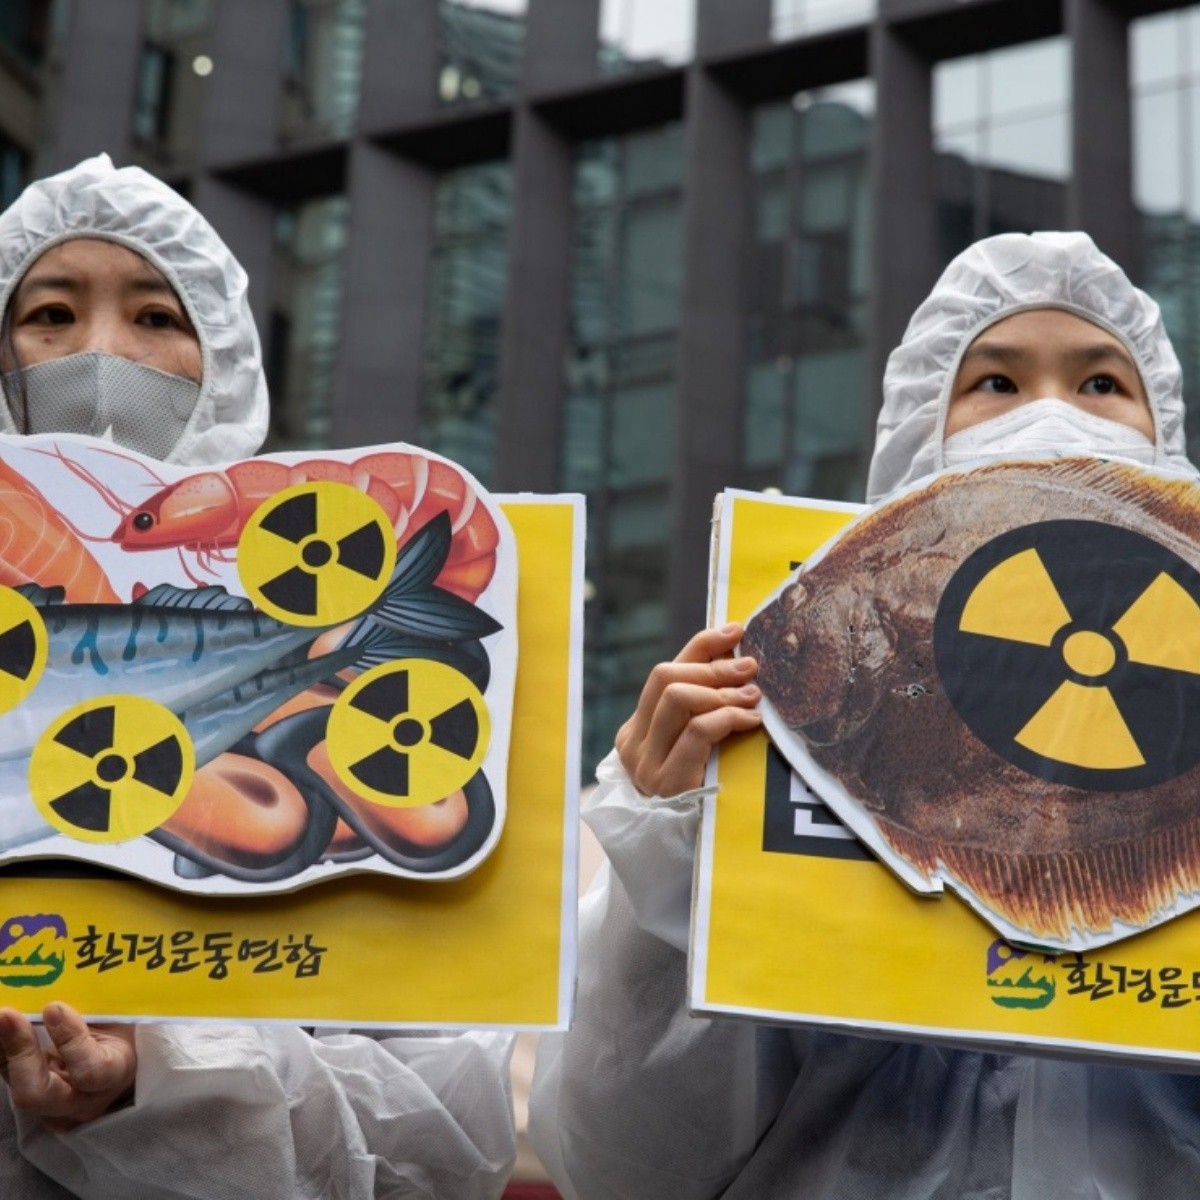 alguien dejó abierta la llave de agua radioactiva en la central nuclear fukushima